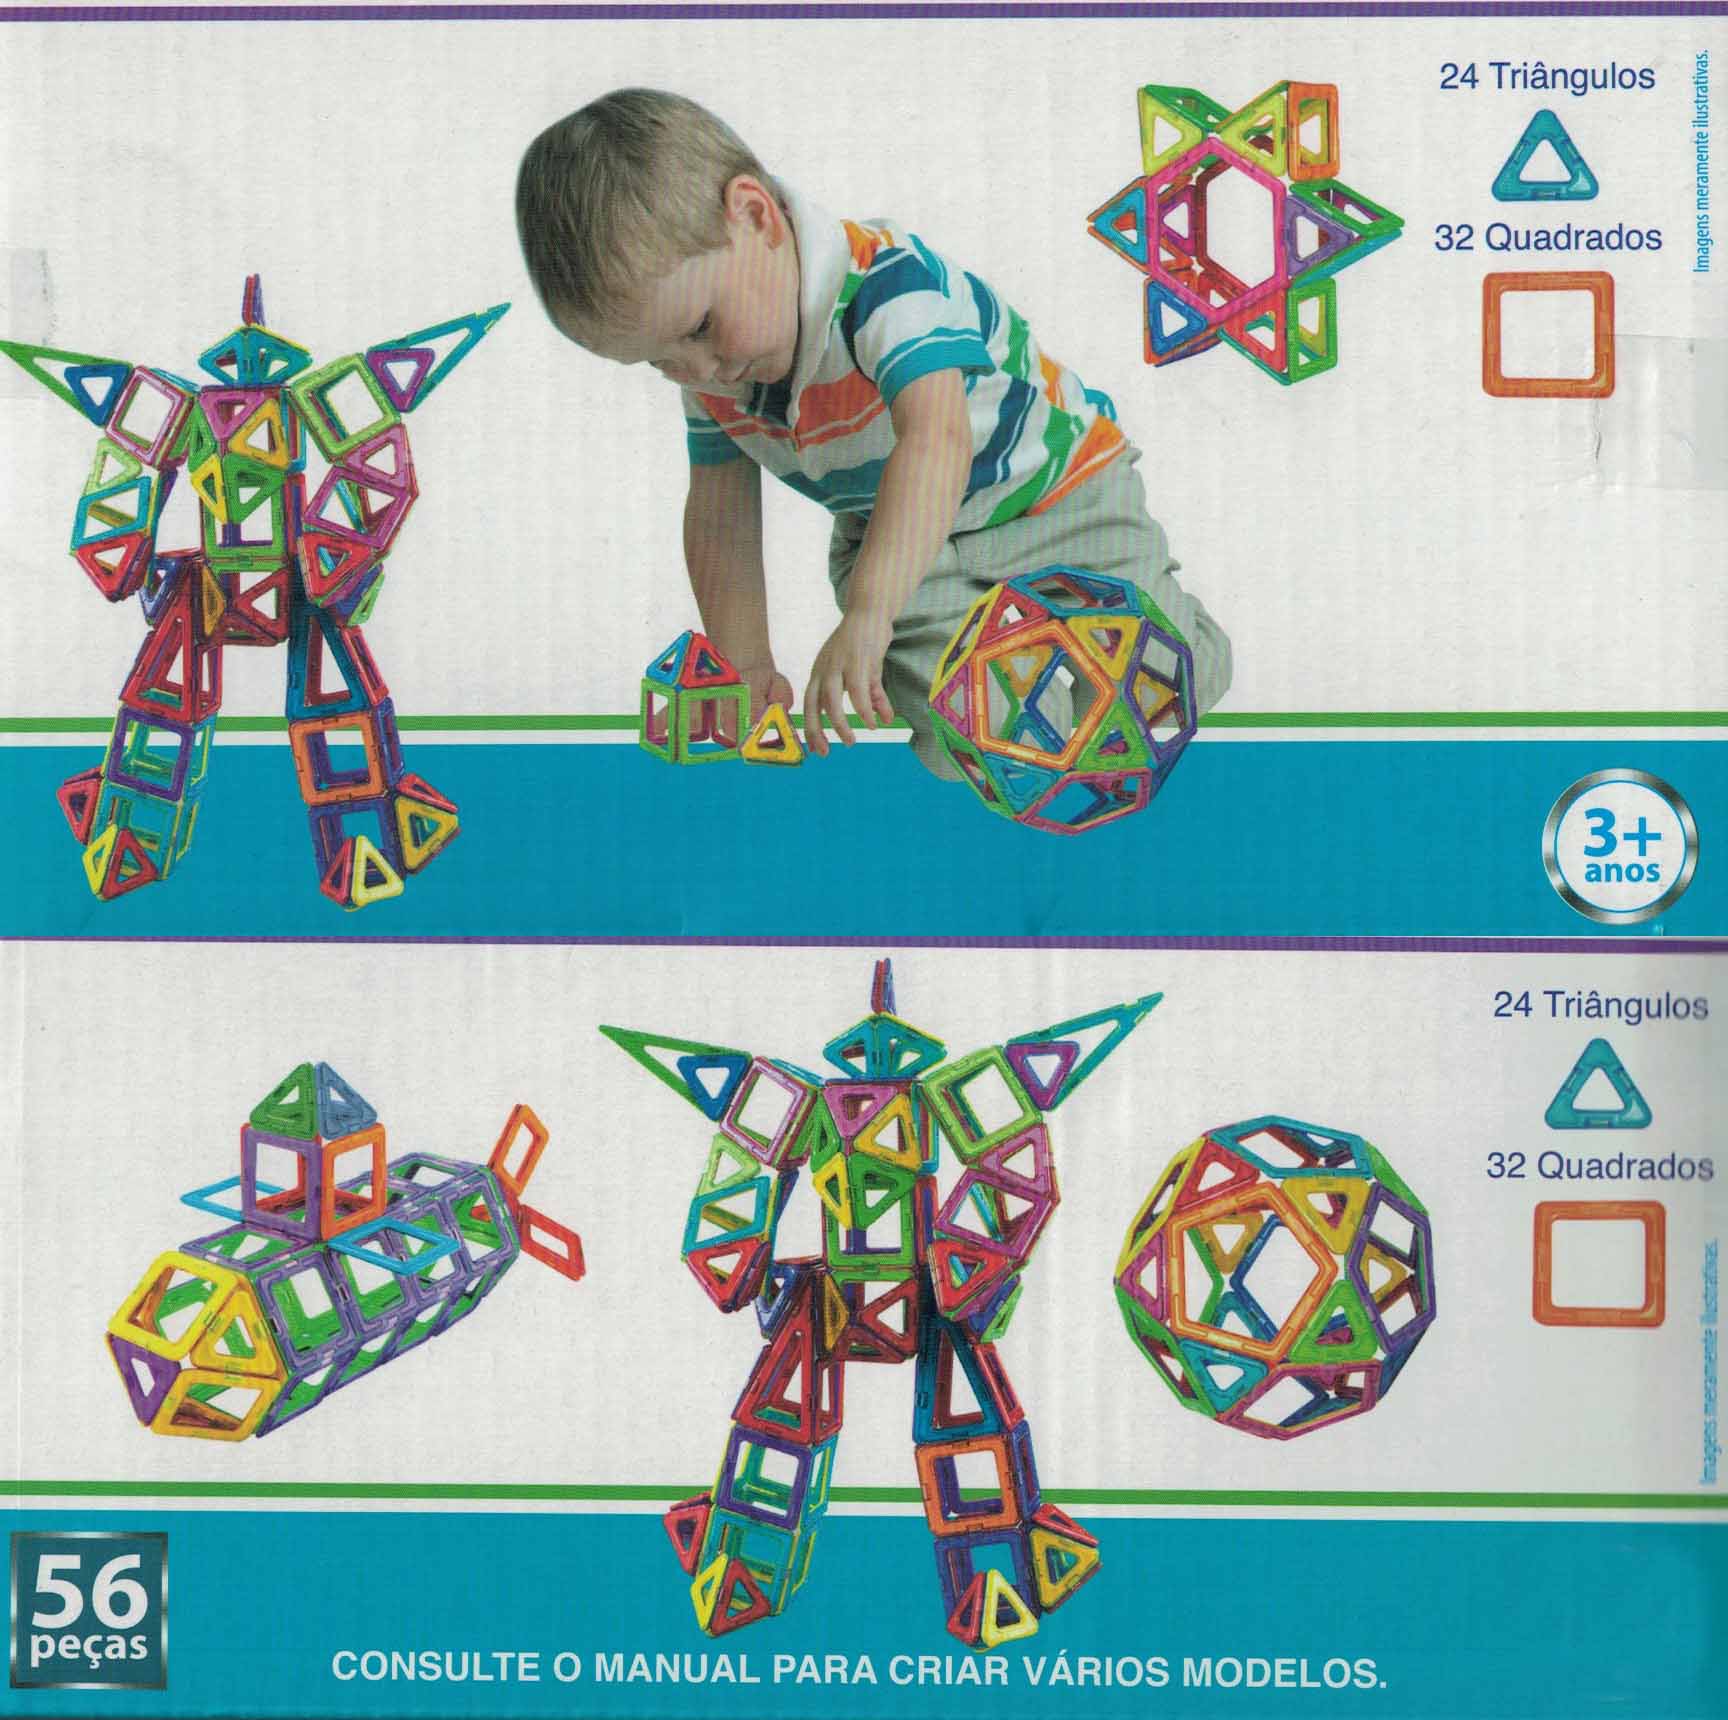 Formas Magnética Blocos Magnético Brinquedo Educativo Para Crianças Peças Com imãs de neodímio